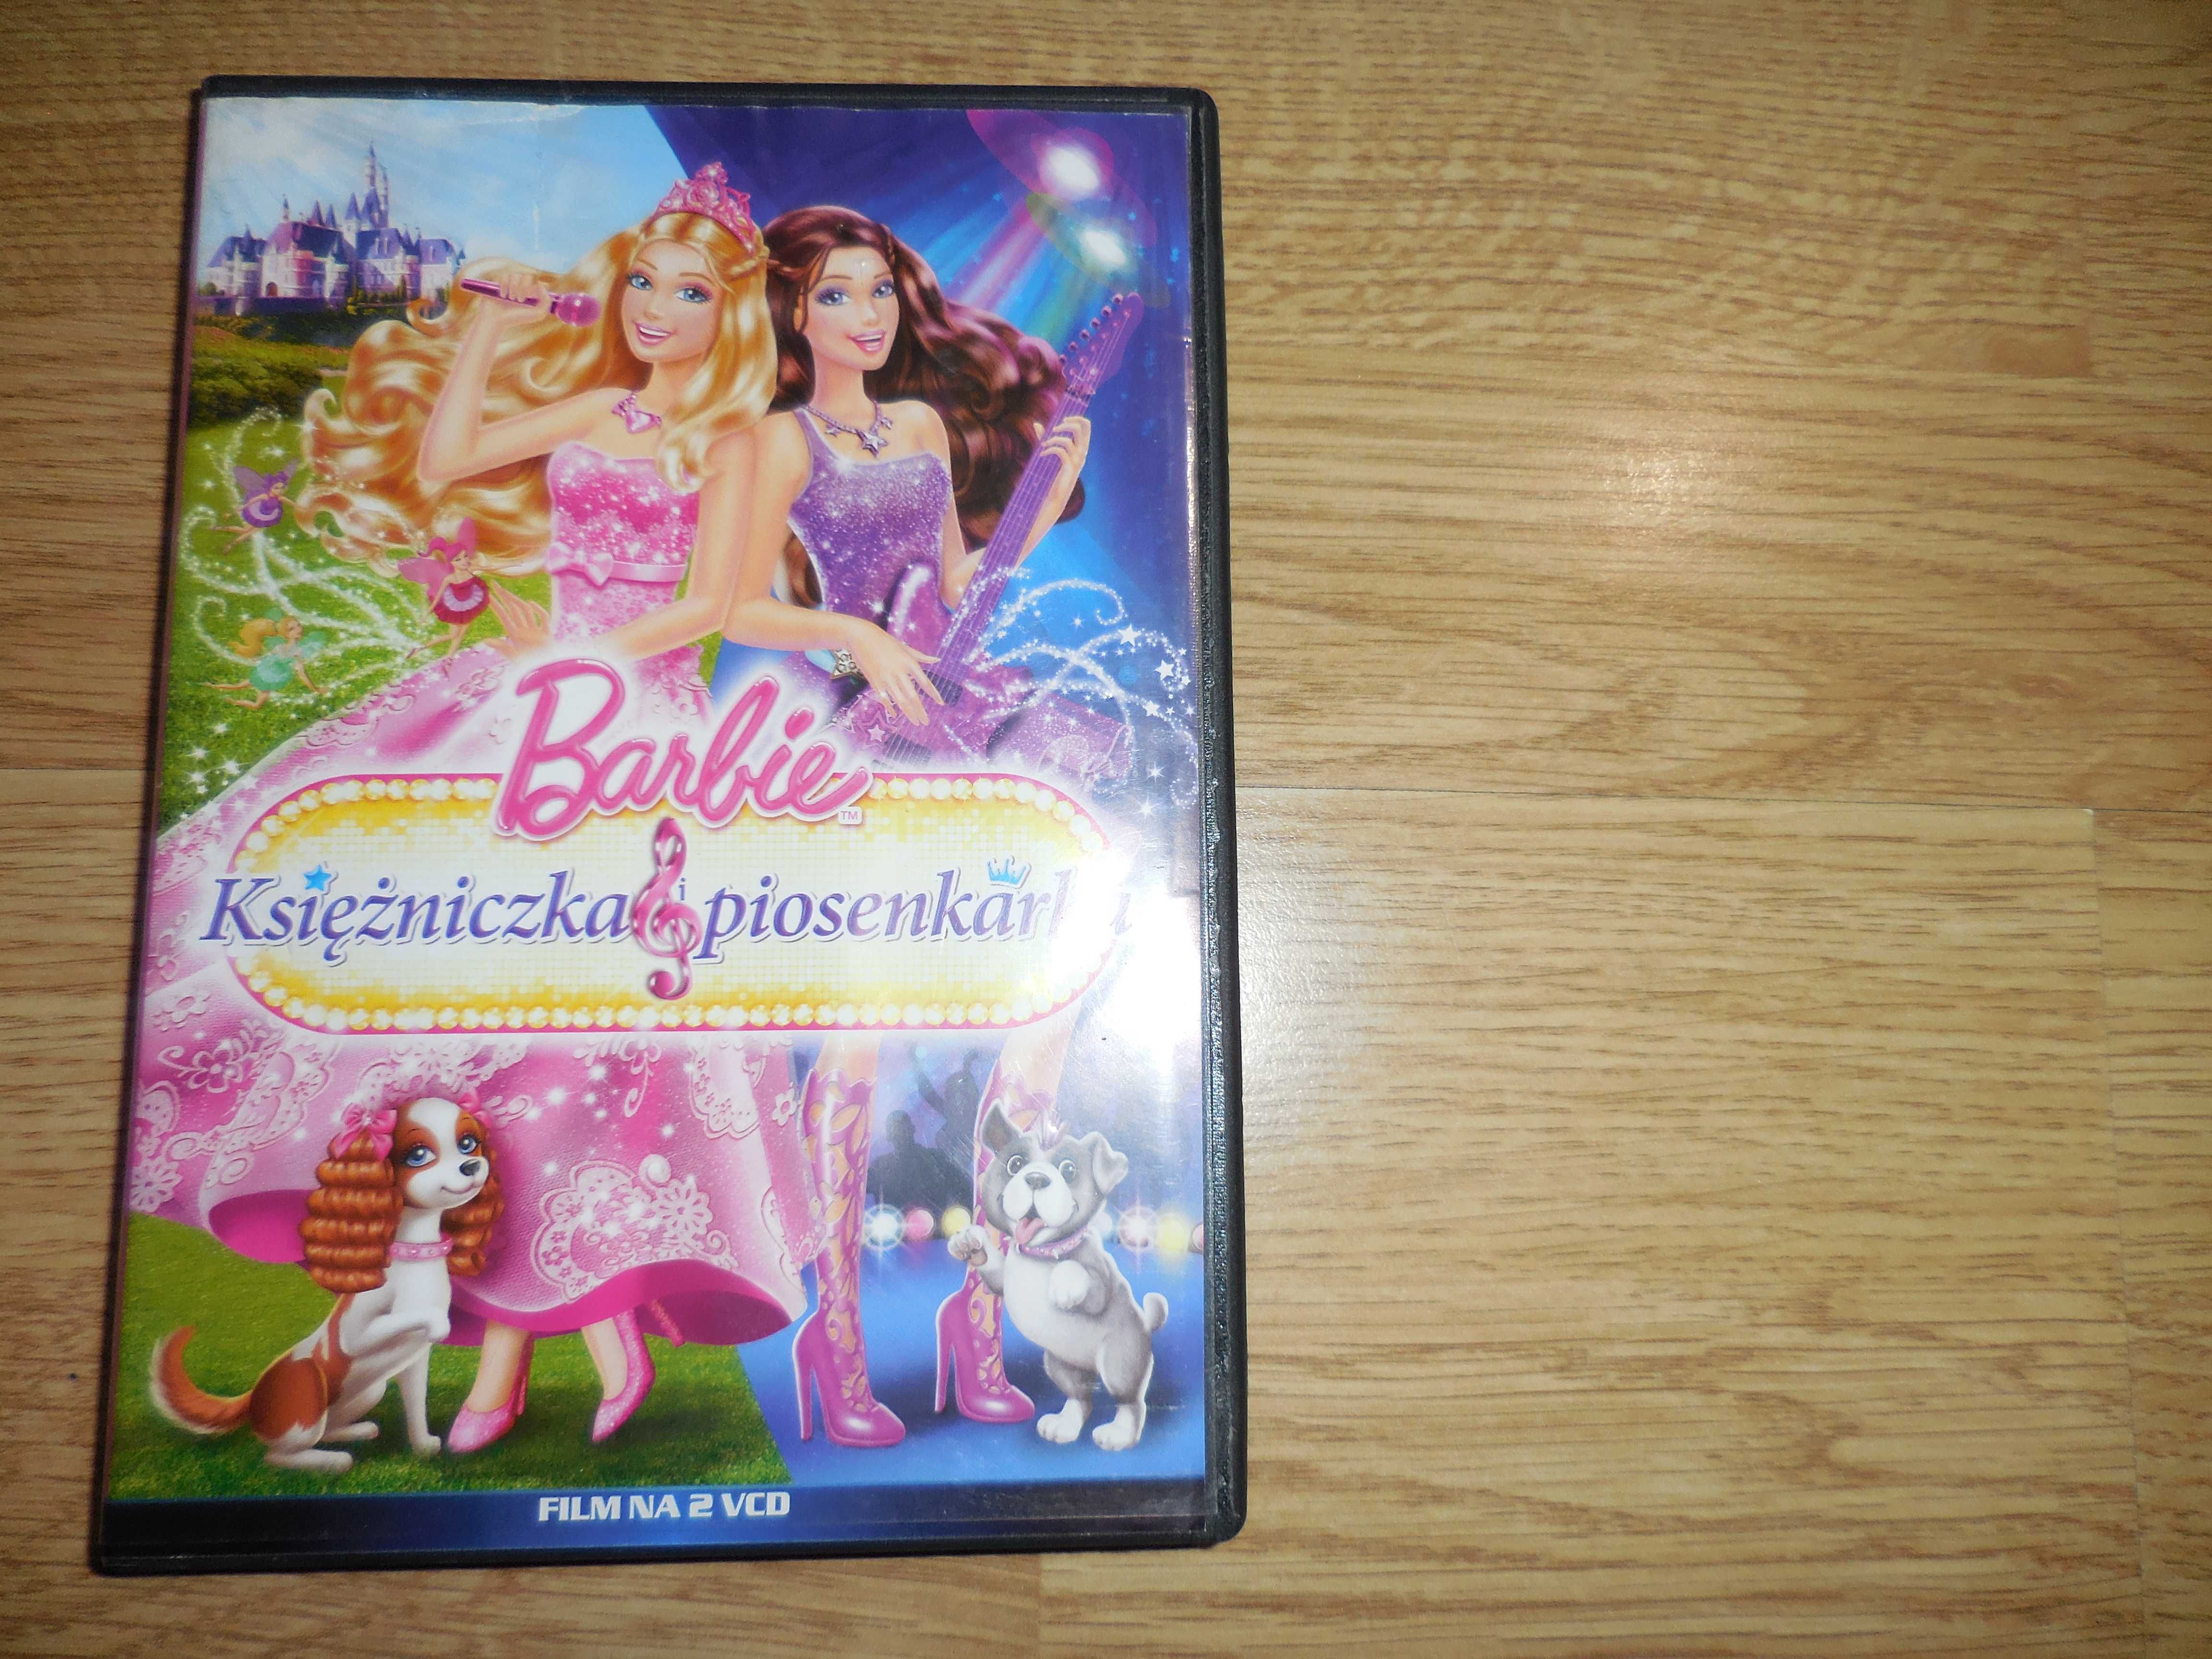 BAJKI 'Barbie księżniczka i piosenkarka' 2 VCD